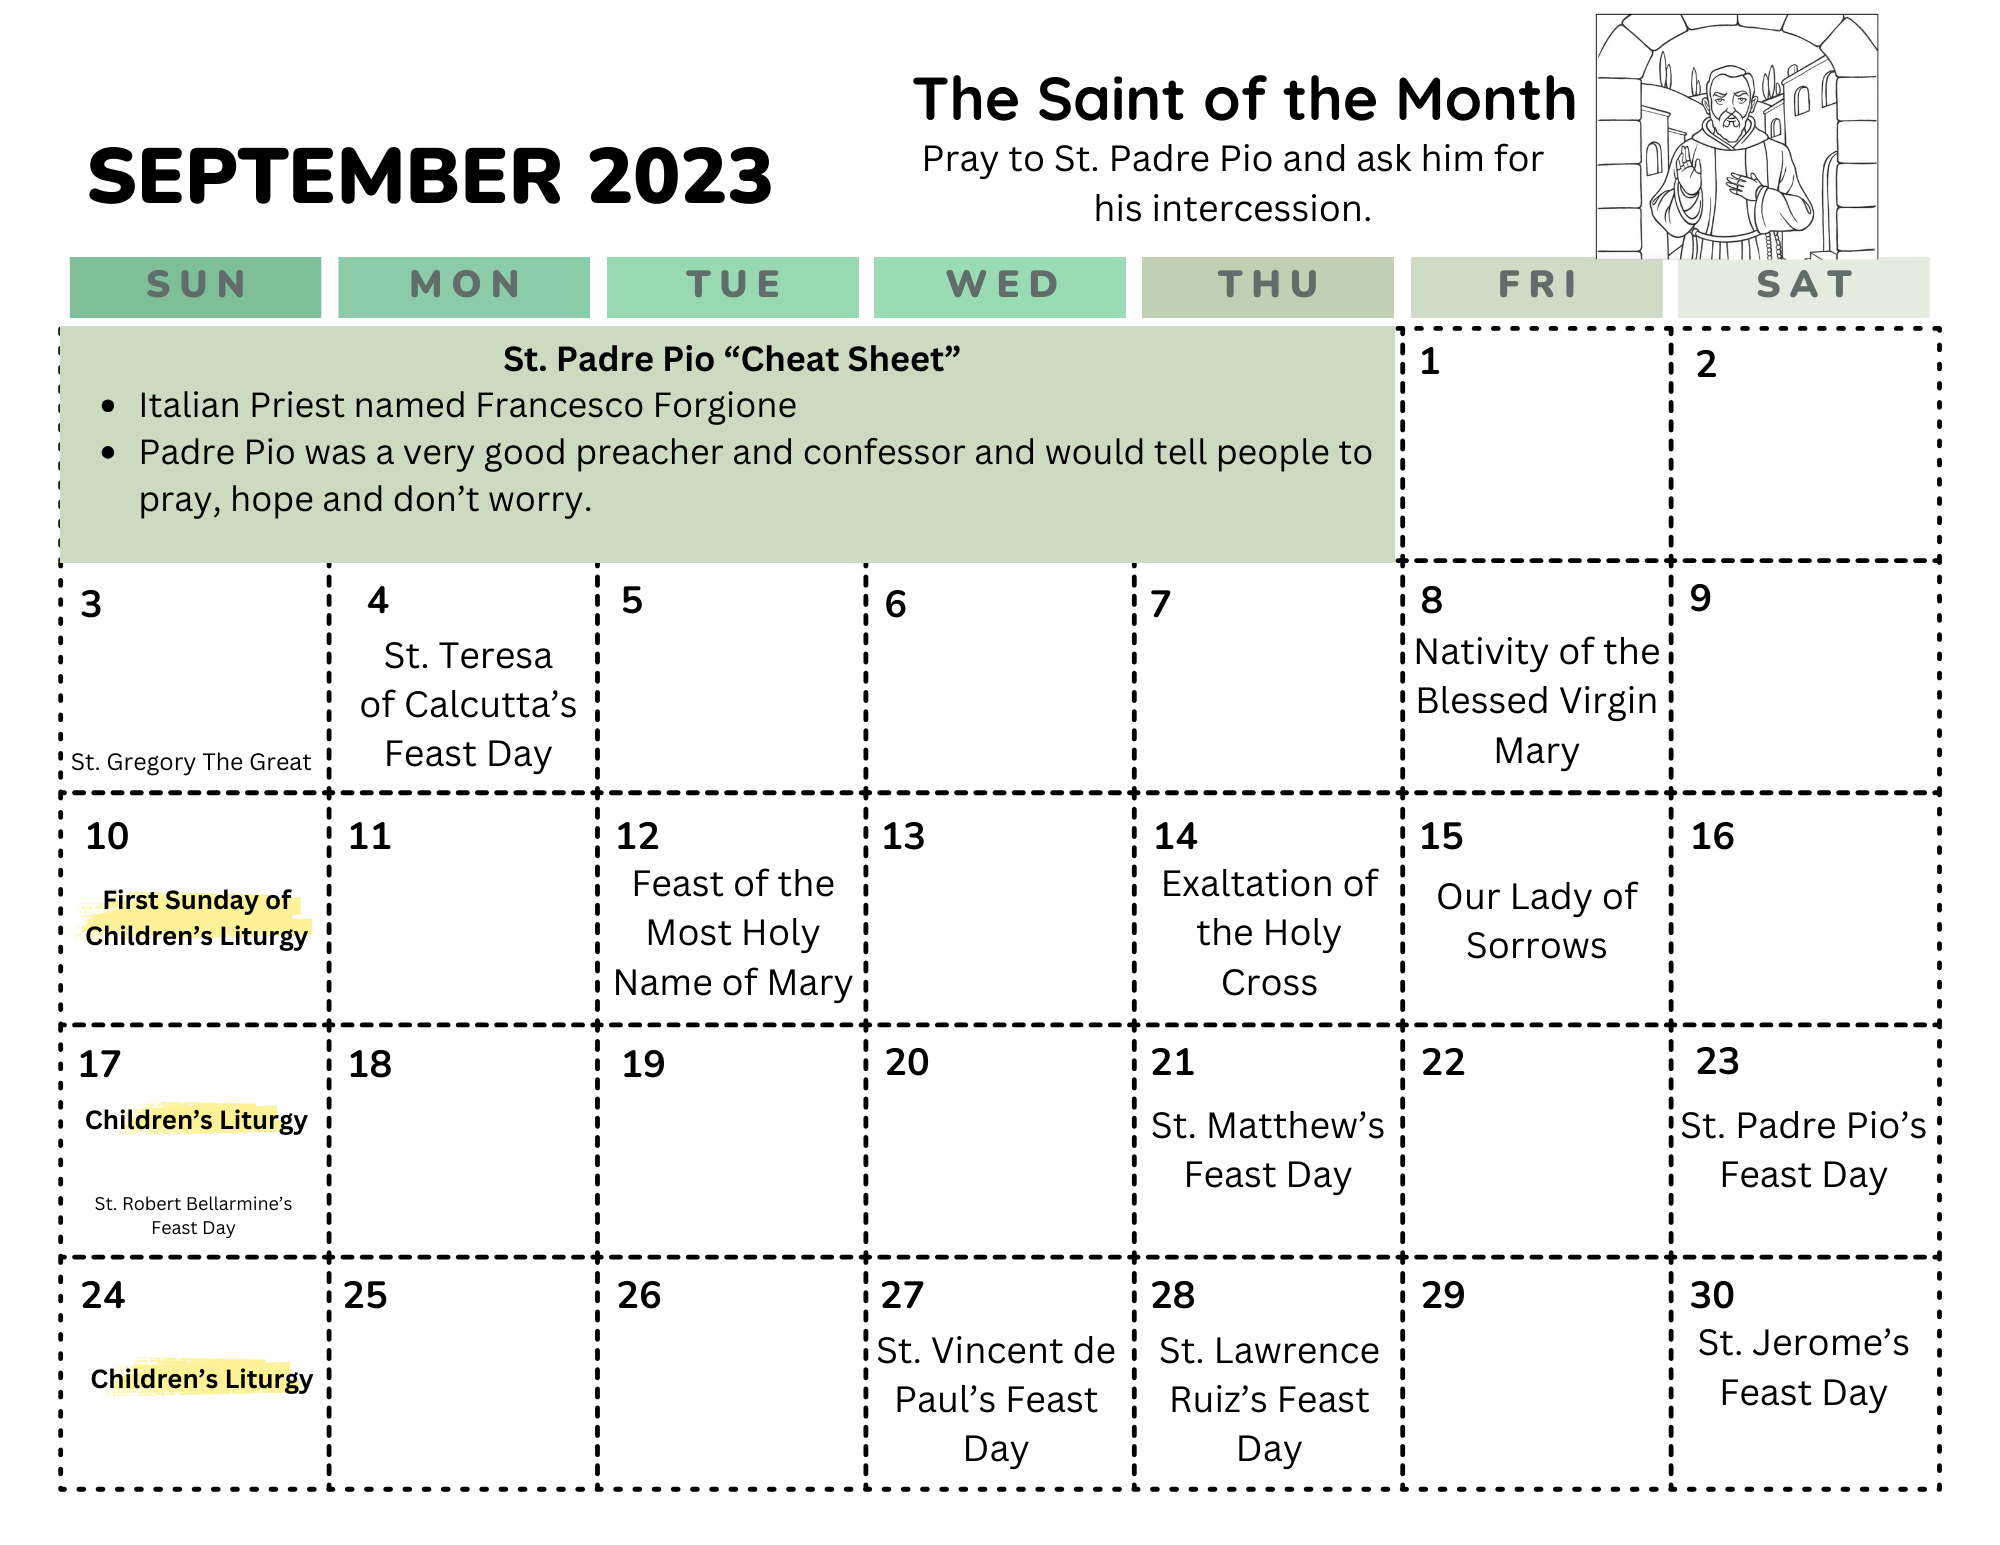 Children's Liturgy Calendar for September 2023